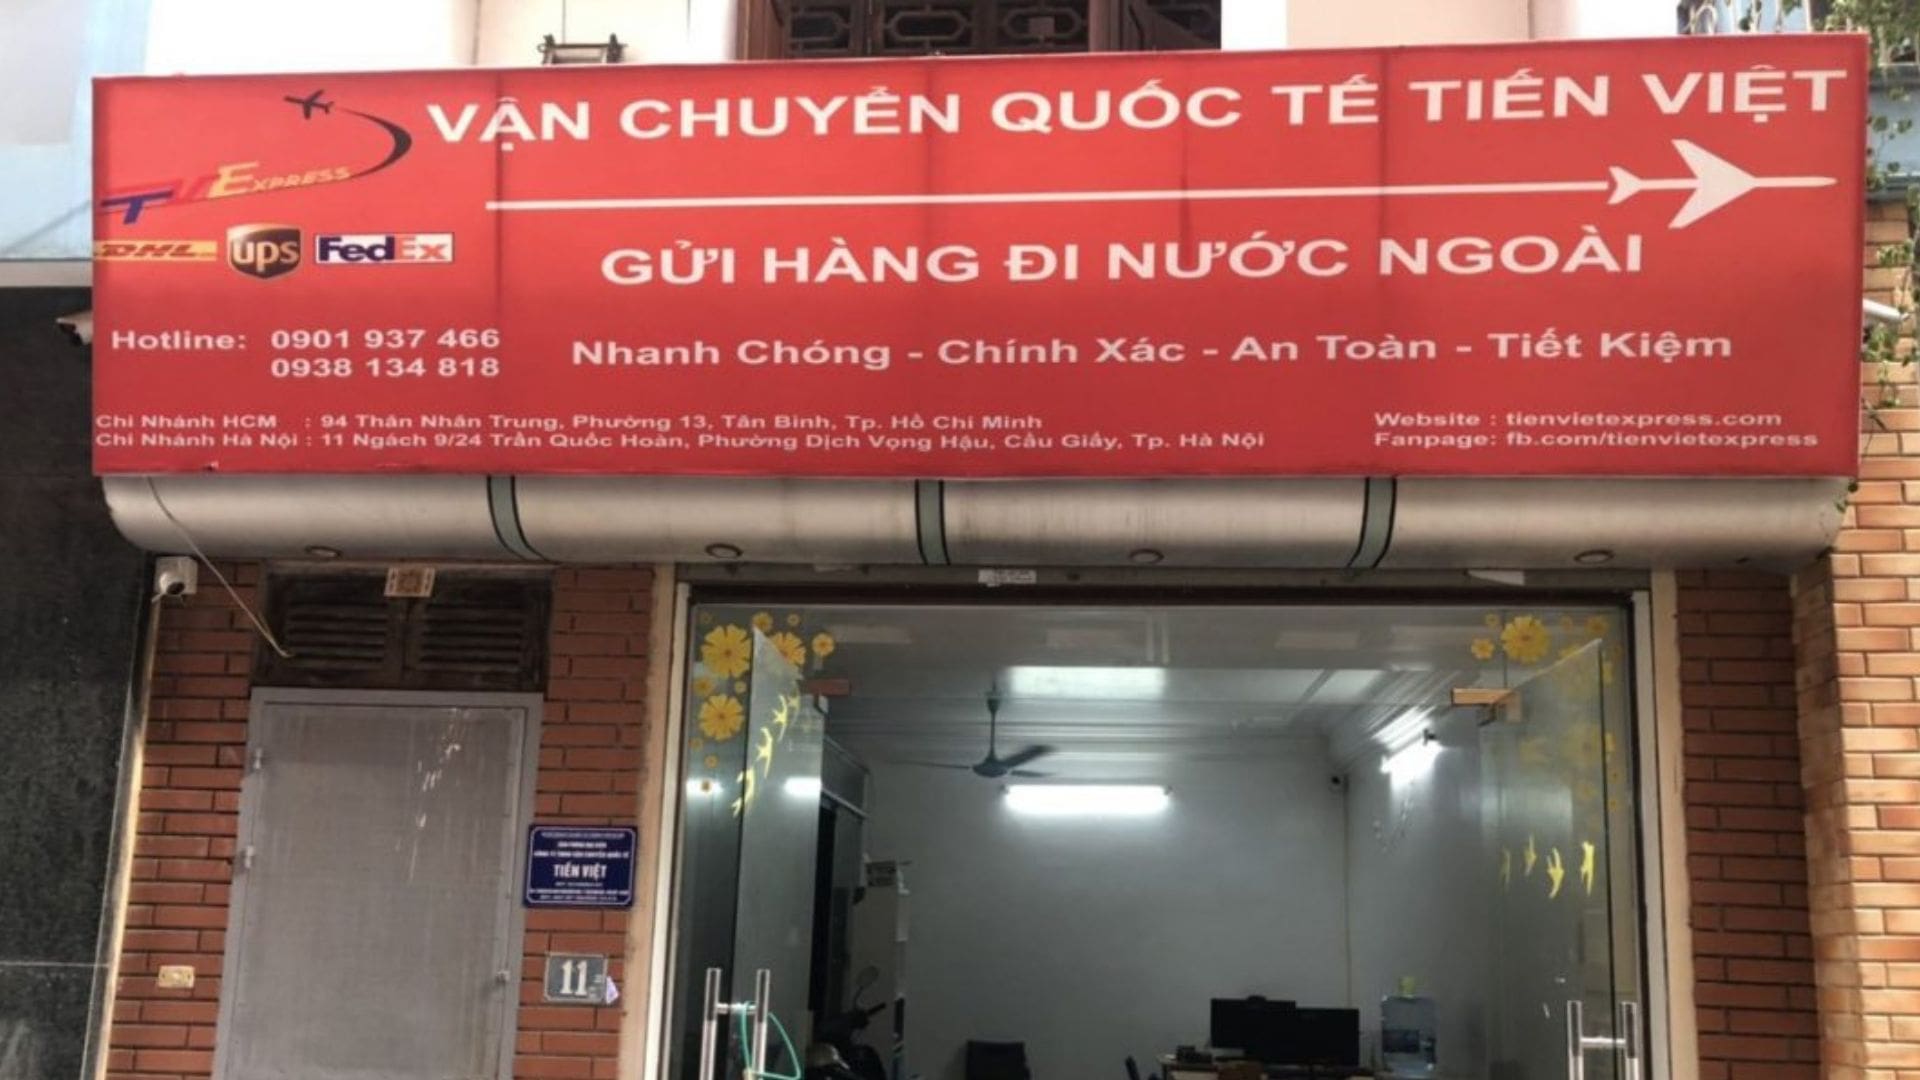 Công ty Tiến Việt - Cung cấp dịch vụ gửi hàng đi Mỹ tại Hà Nội tiết kiệm